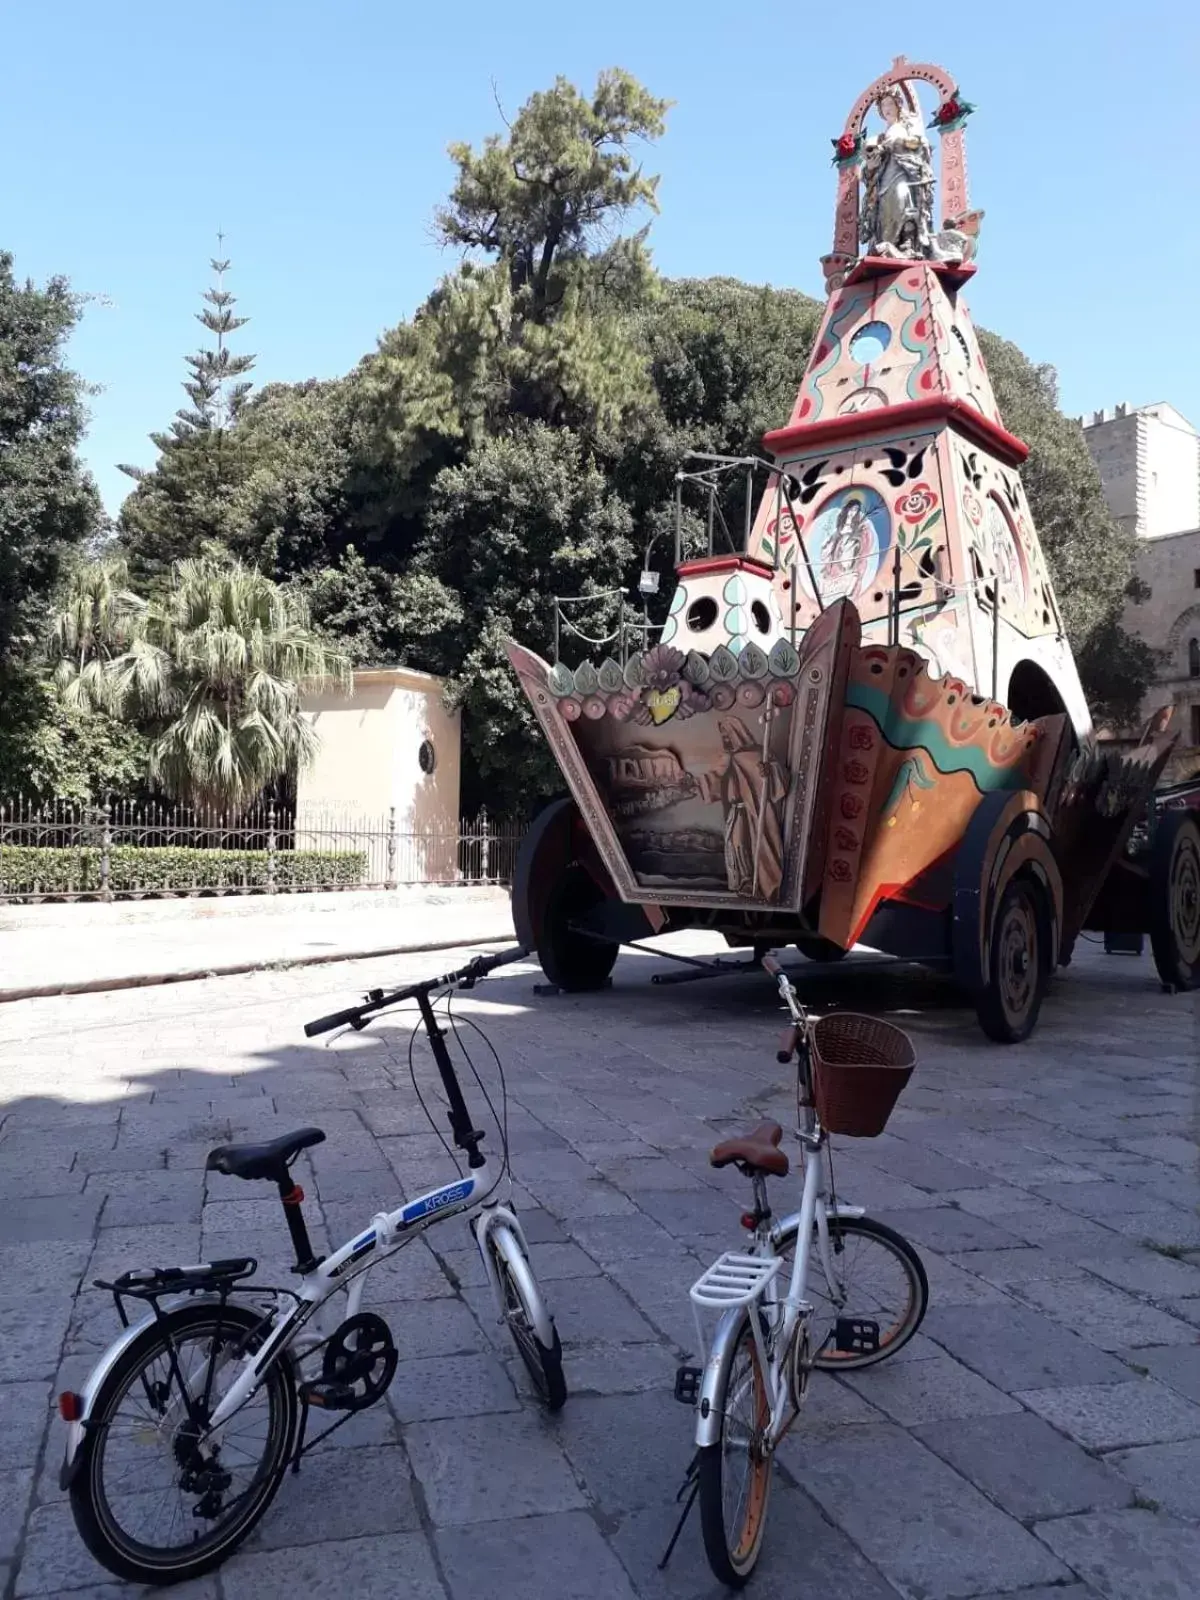 Activities in Piazza Marina